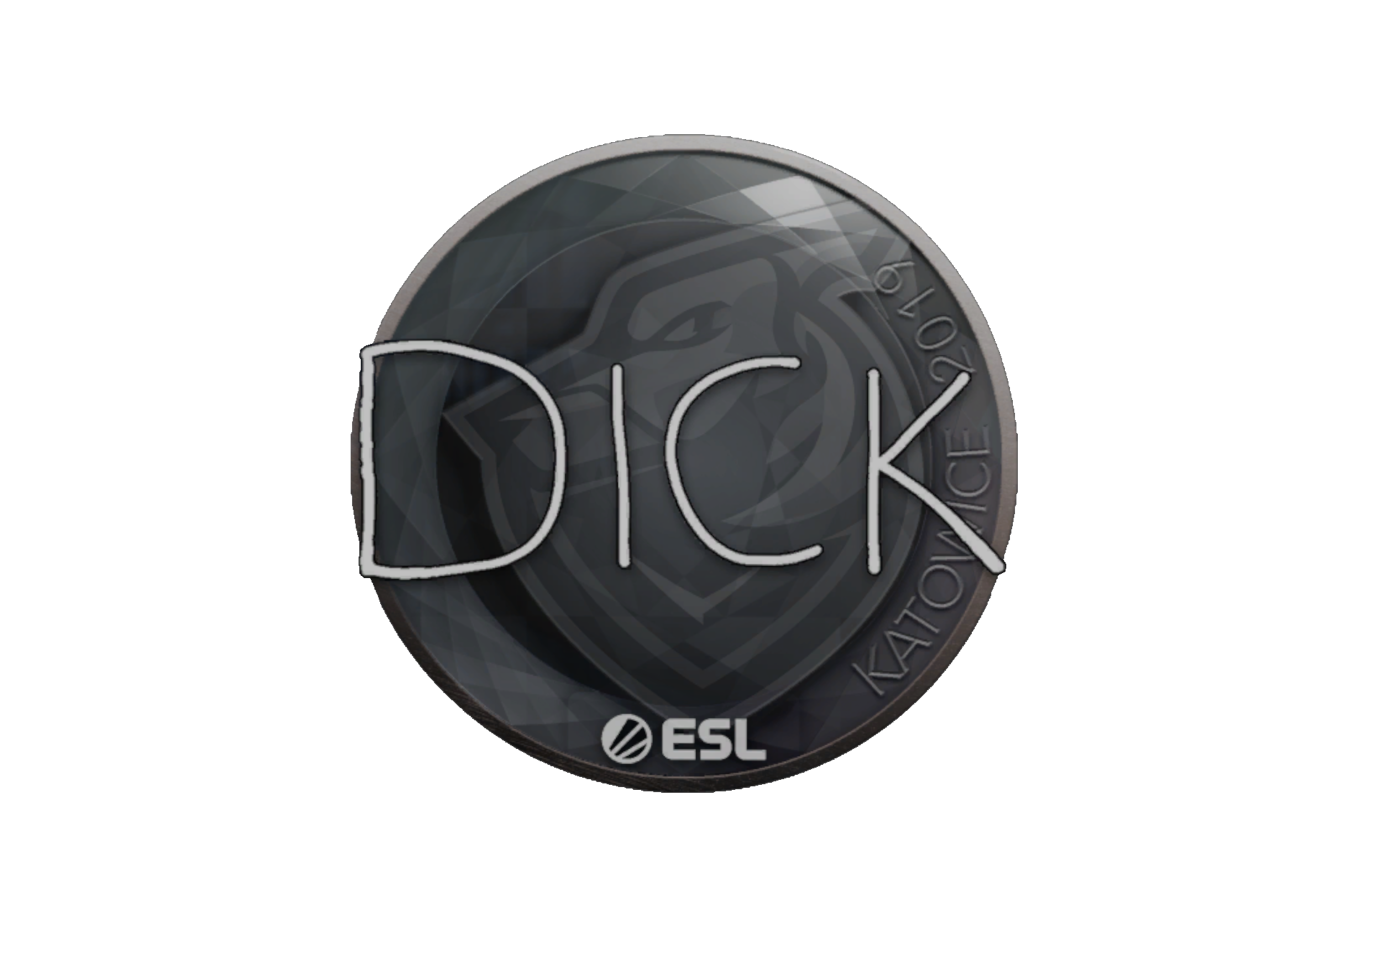 Наклейка dick CS go. Наклейка | Dickstacy | Катовице 2019. Dickstacy наклейка. Big dick наклейка в КС го. Dick купить